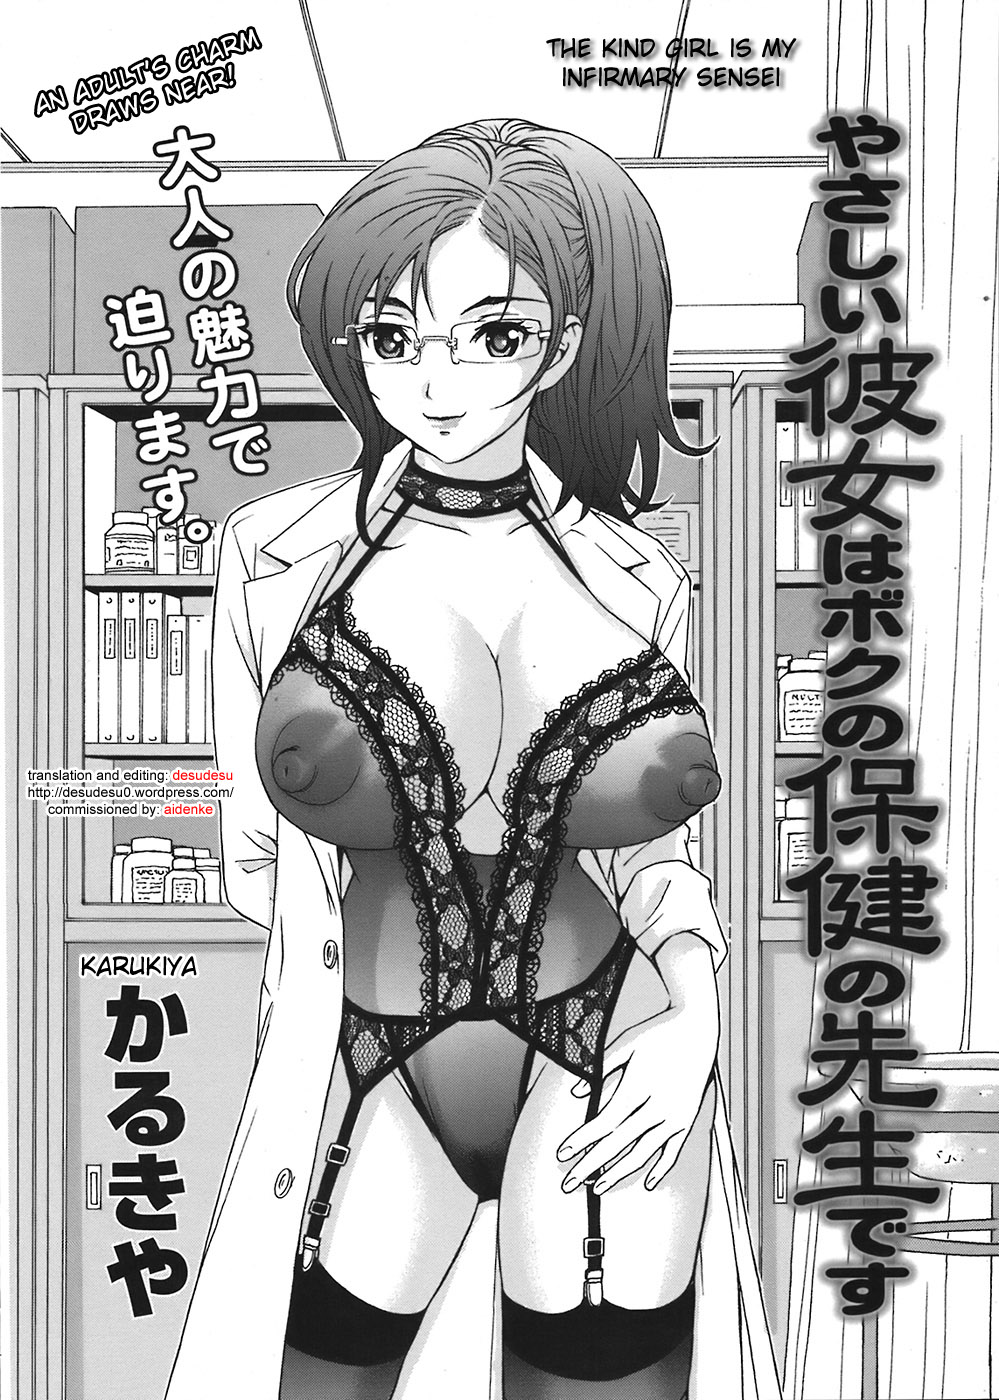 [Karukiya] Yasashii Kanojo wa Boku no Hoken no Sensei desu - The Kind Girl Is My Infirmary Sensei Hentai Comic